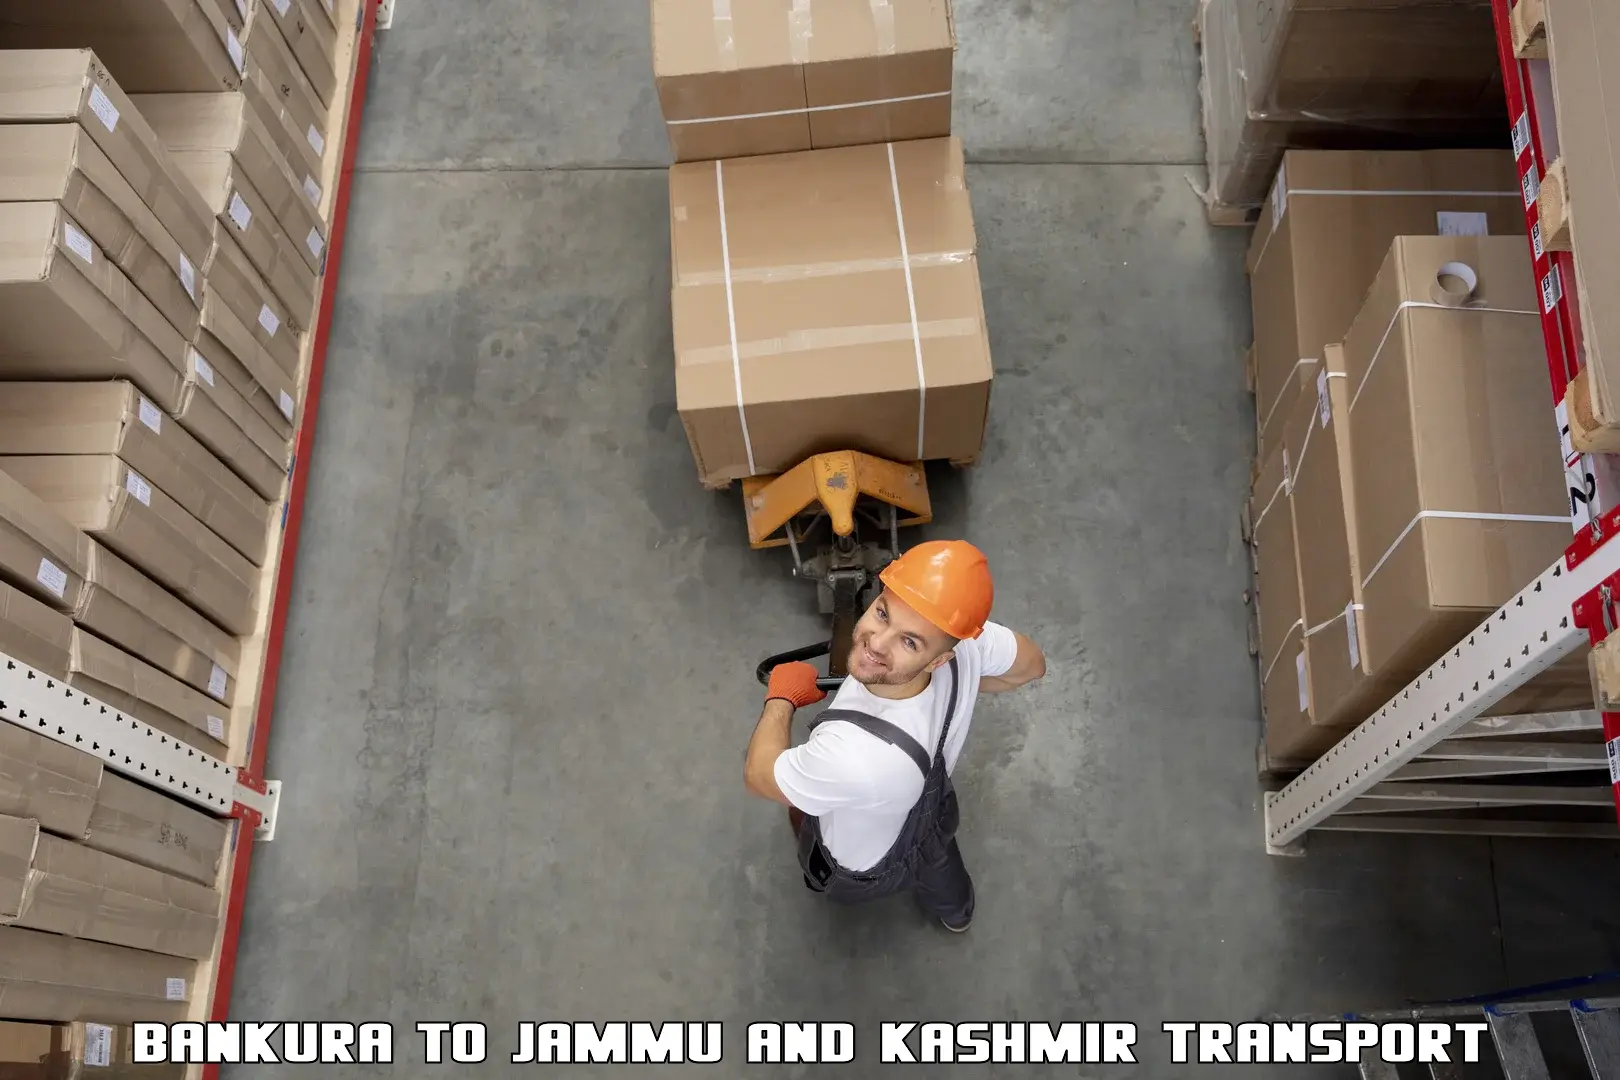 Express transport services Bankura to Jammu